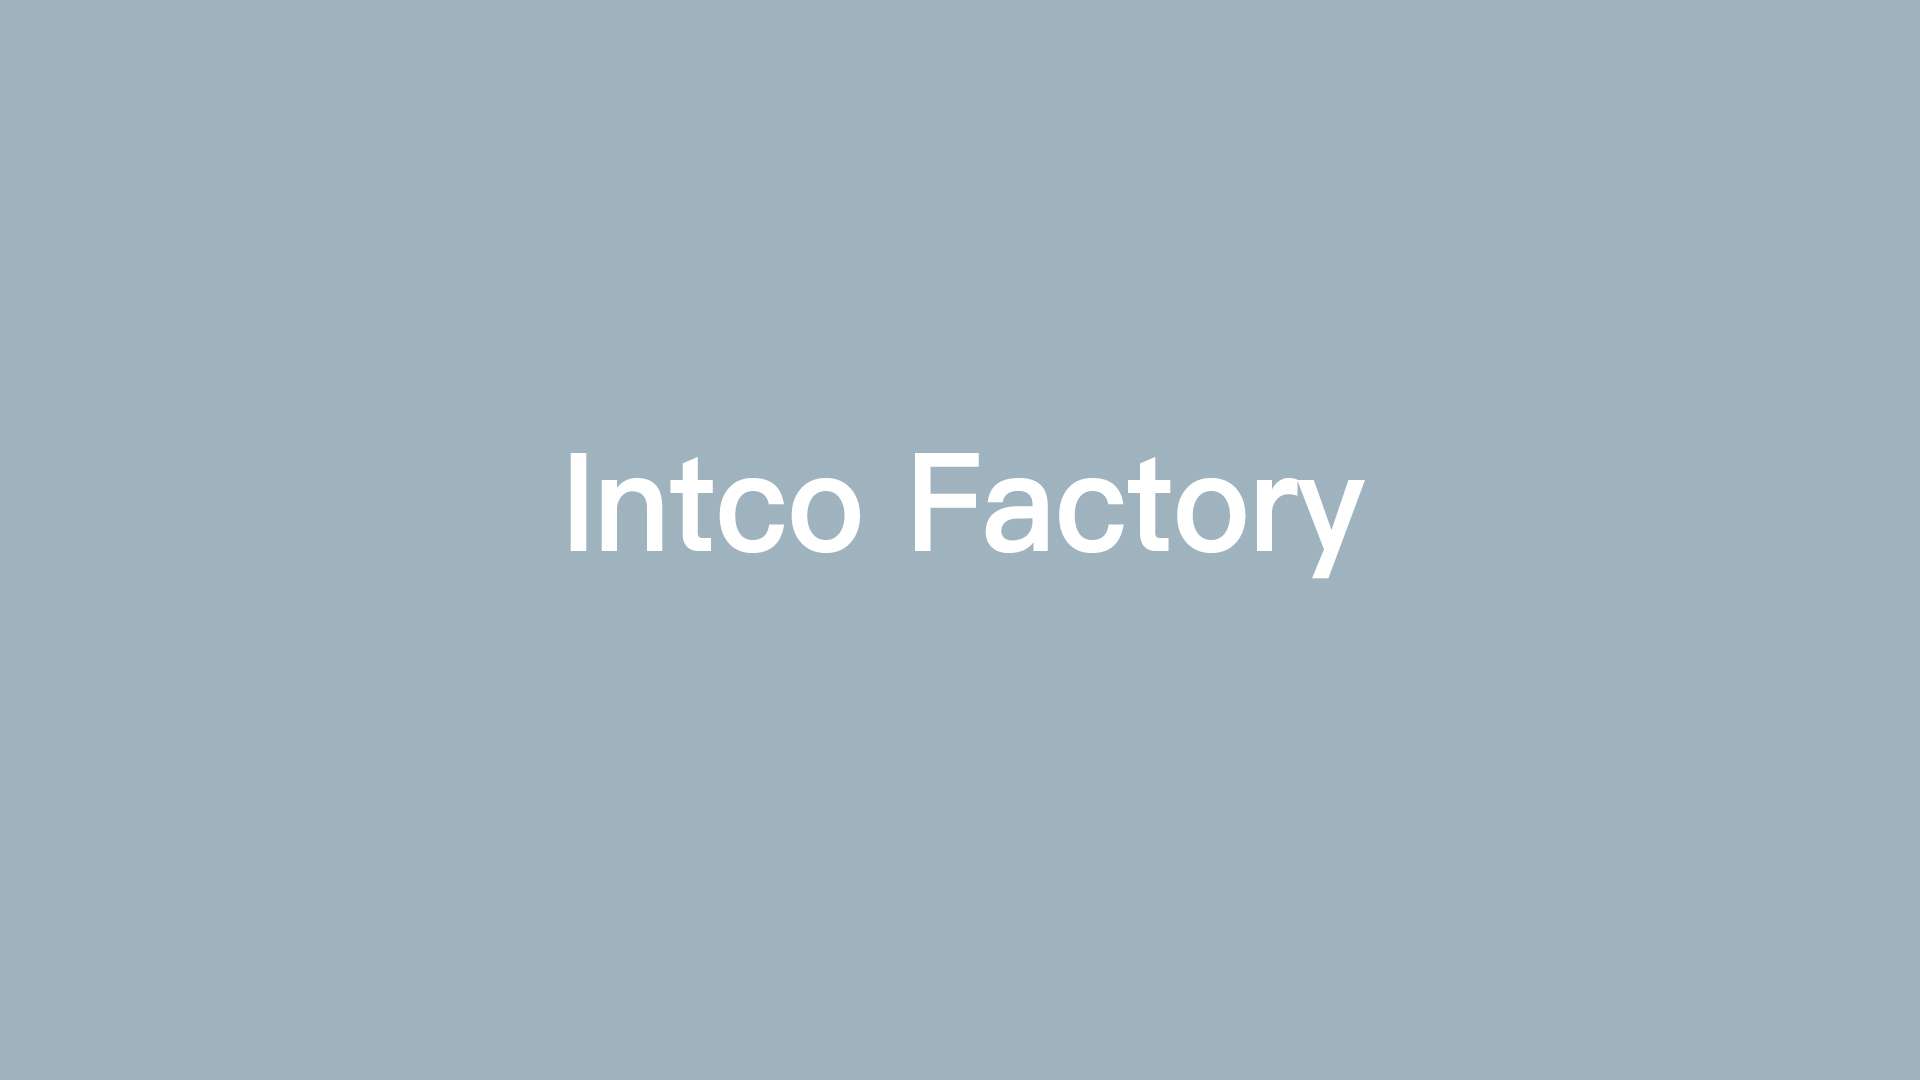 Intco Factory